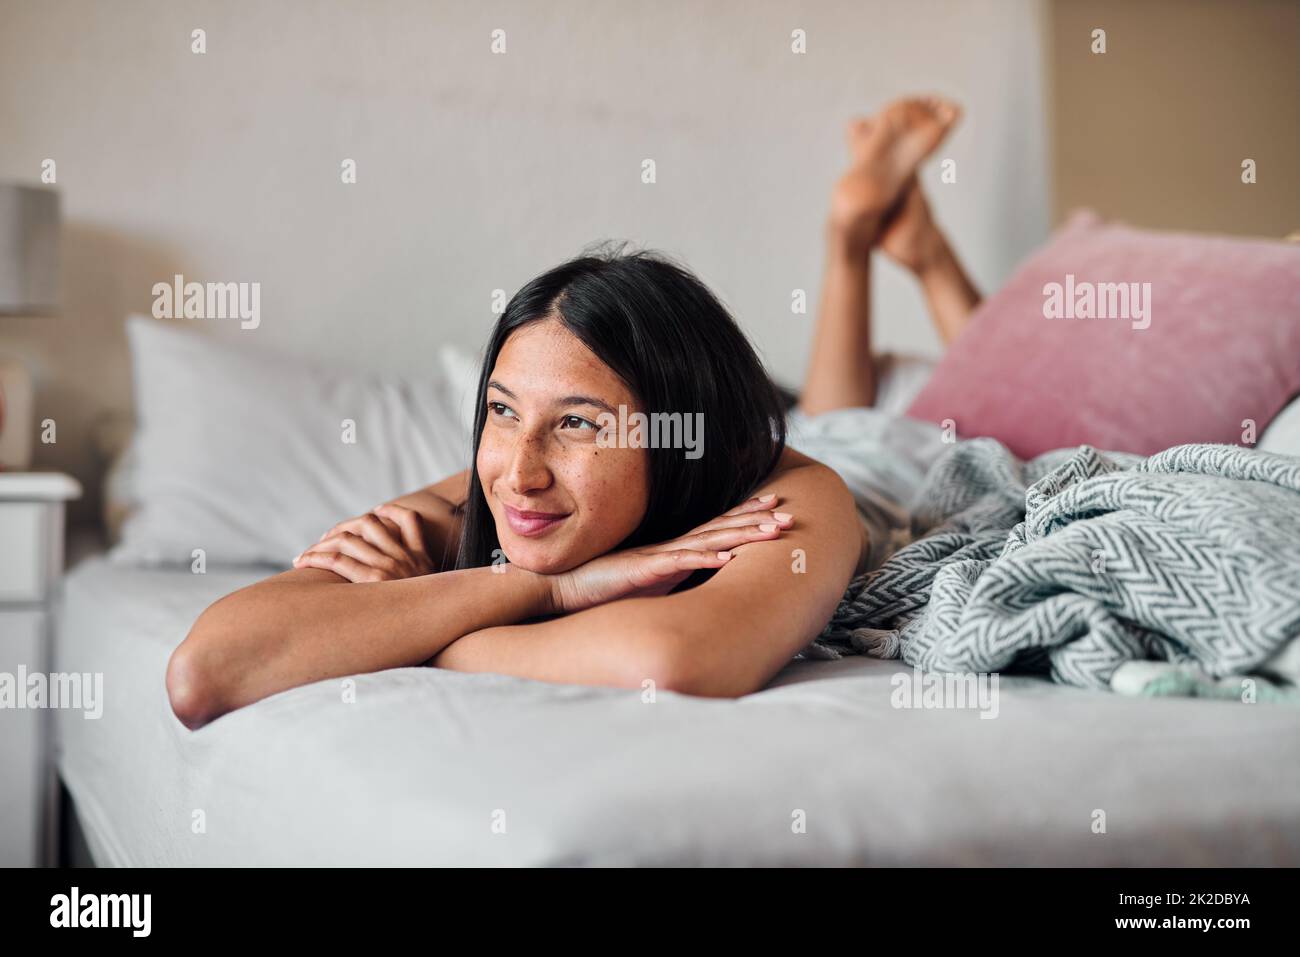 Tagträume geben uns etwas, auf das wir uns freuen können. Aufnahme einer jungen Frau, die zu Hause einen entspannenden Moment im Bett genießt. Stockfoto